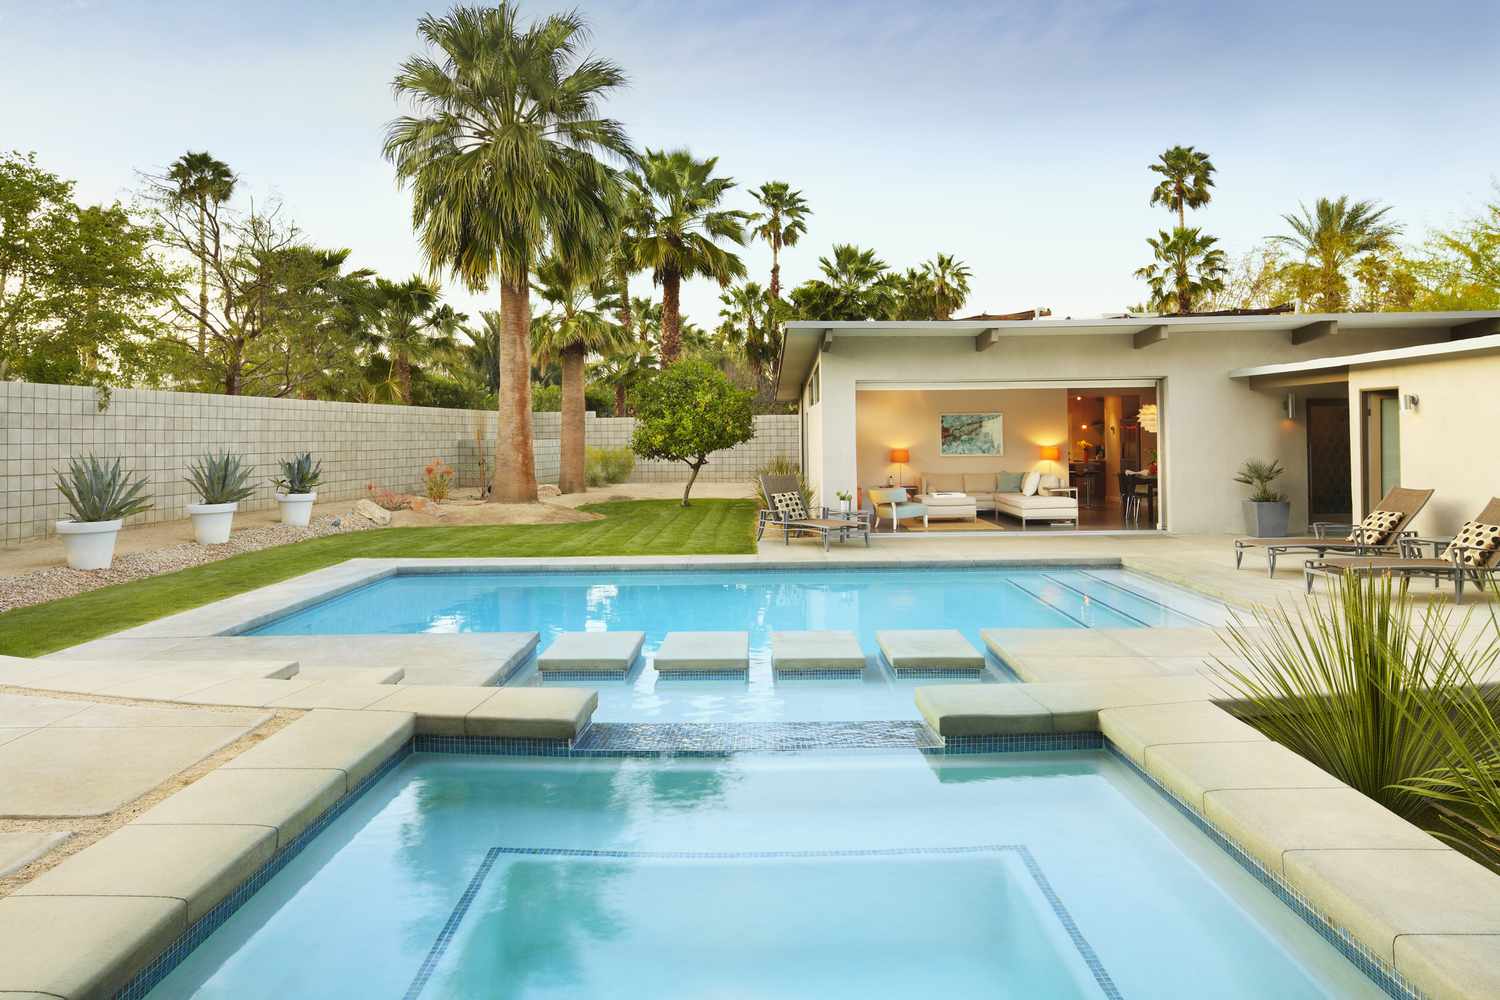 Uma piscina de imersão cercada por palmeiras e móveis no pátio.